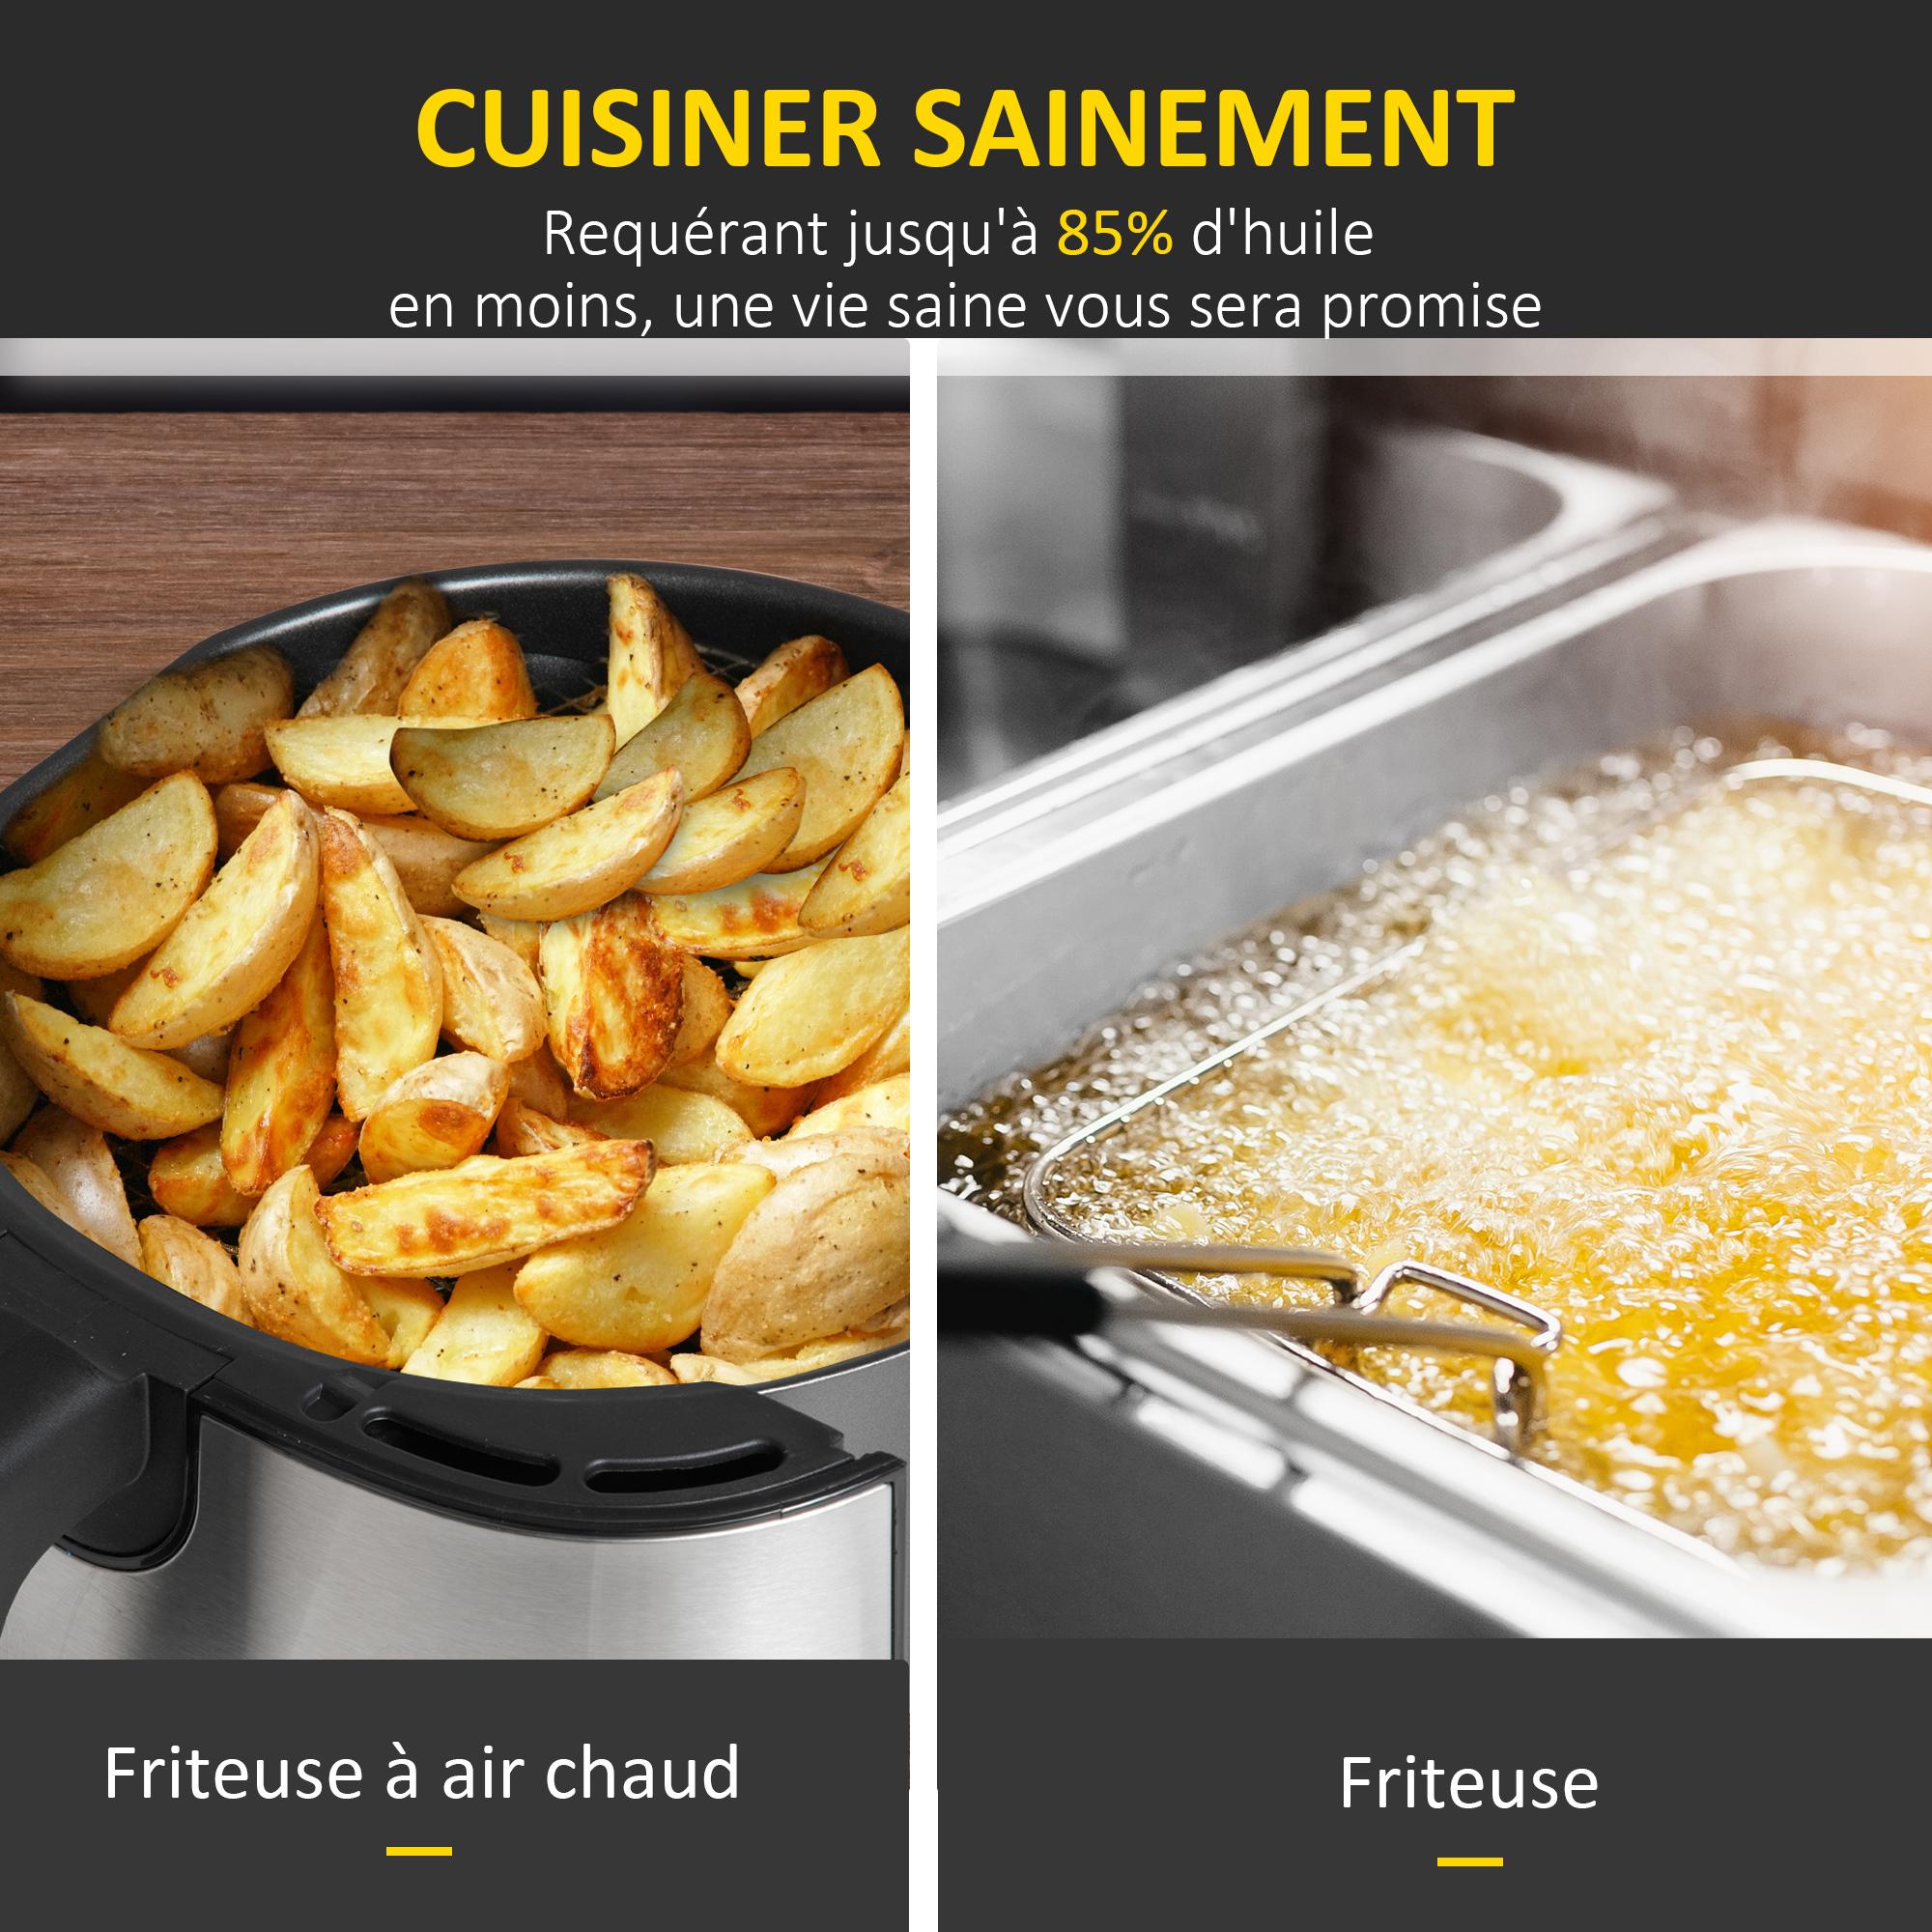 Friteuse à air 1700W 6,5L - friteuse sans huile multifonction 8 programmes - température réglable - timer 60 min. - gris noir